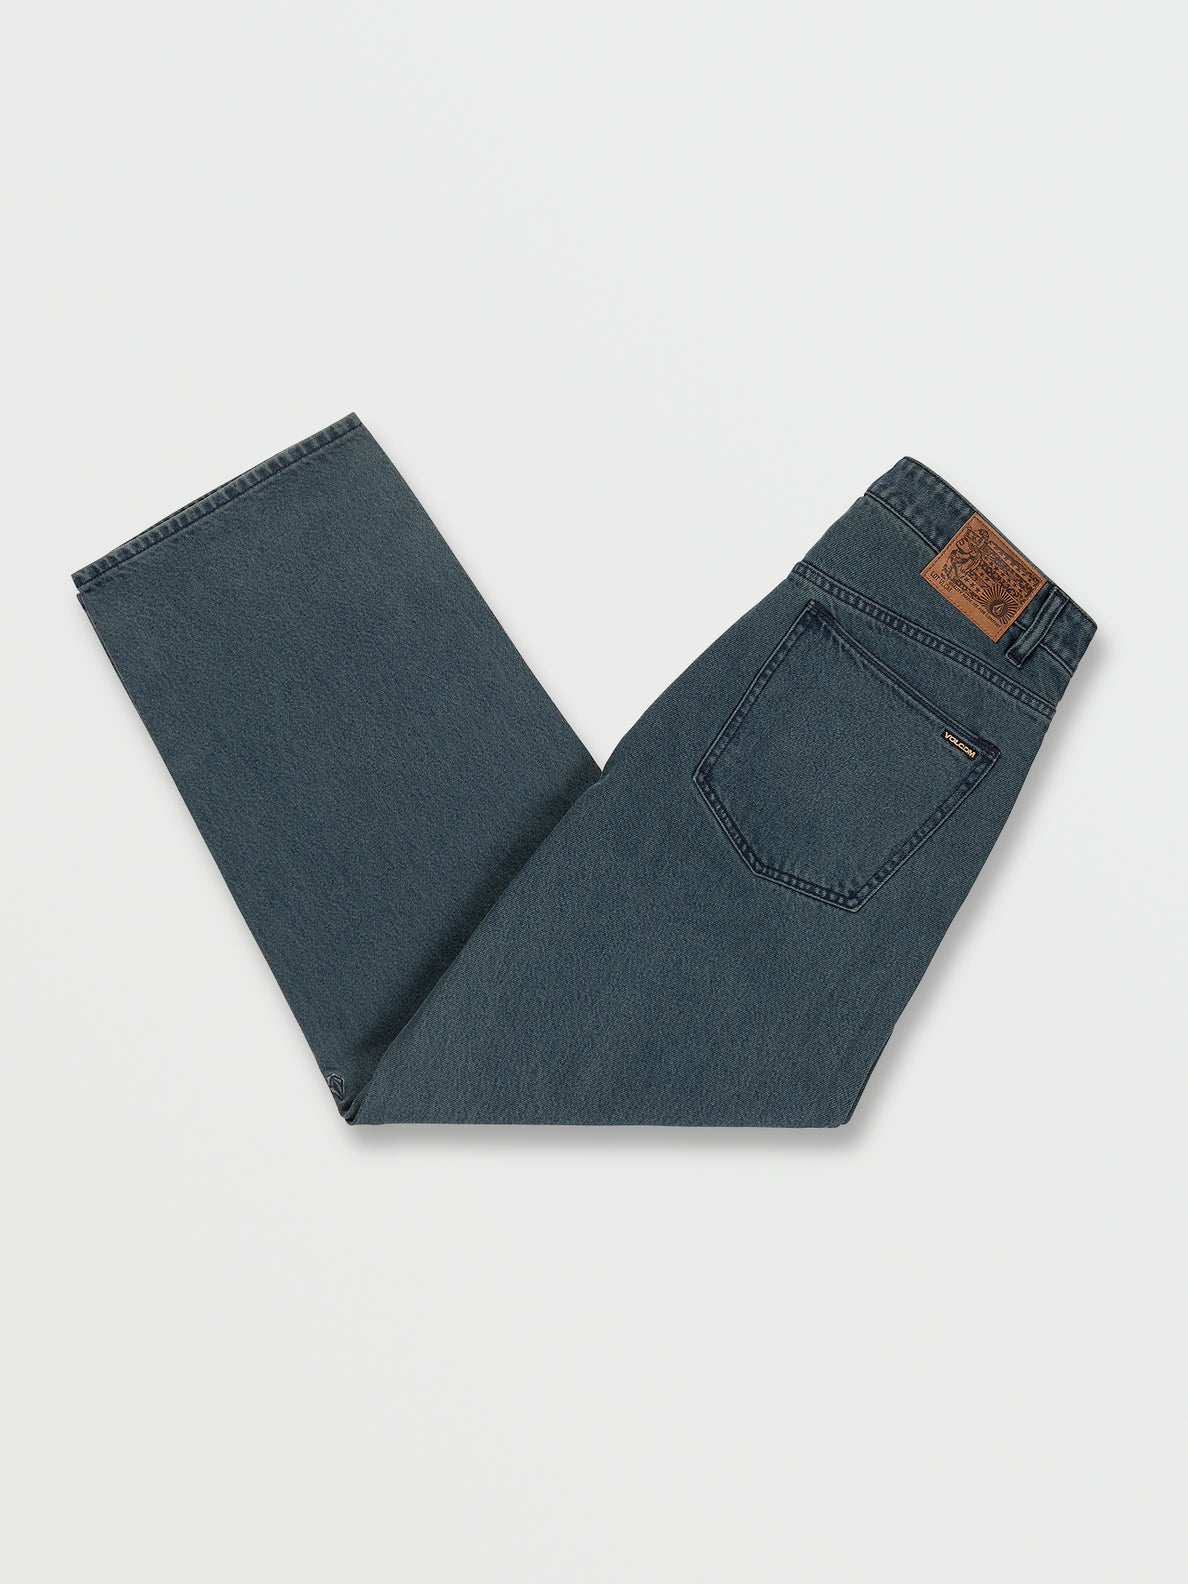 Billow Loose Fit Jeans - Marina Blue (A1932205_MRB) [02]